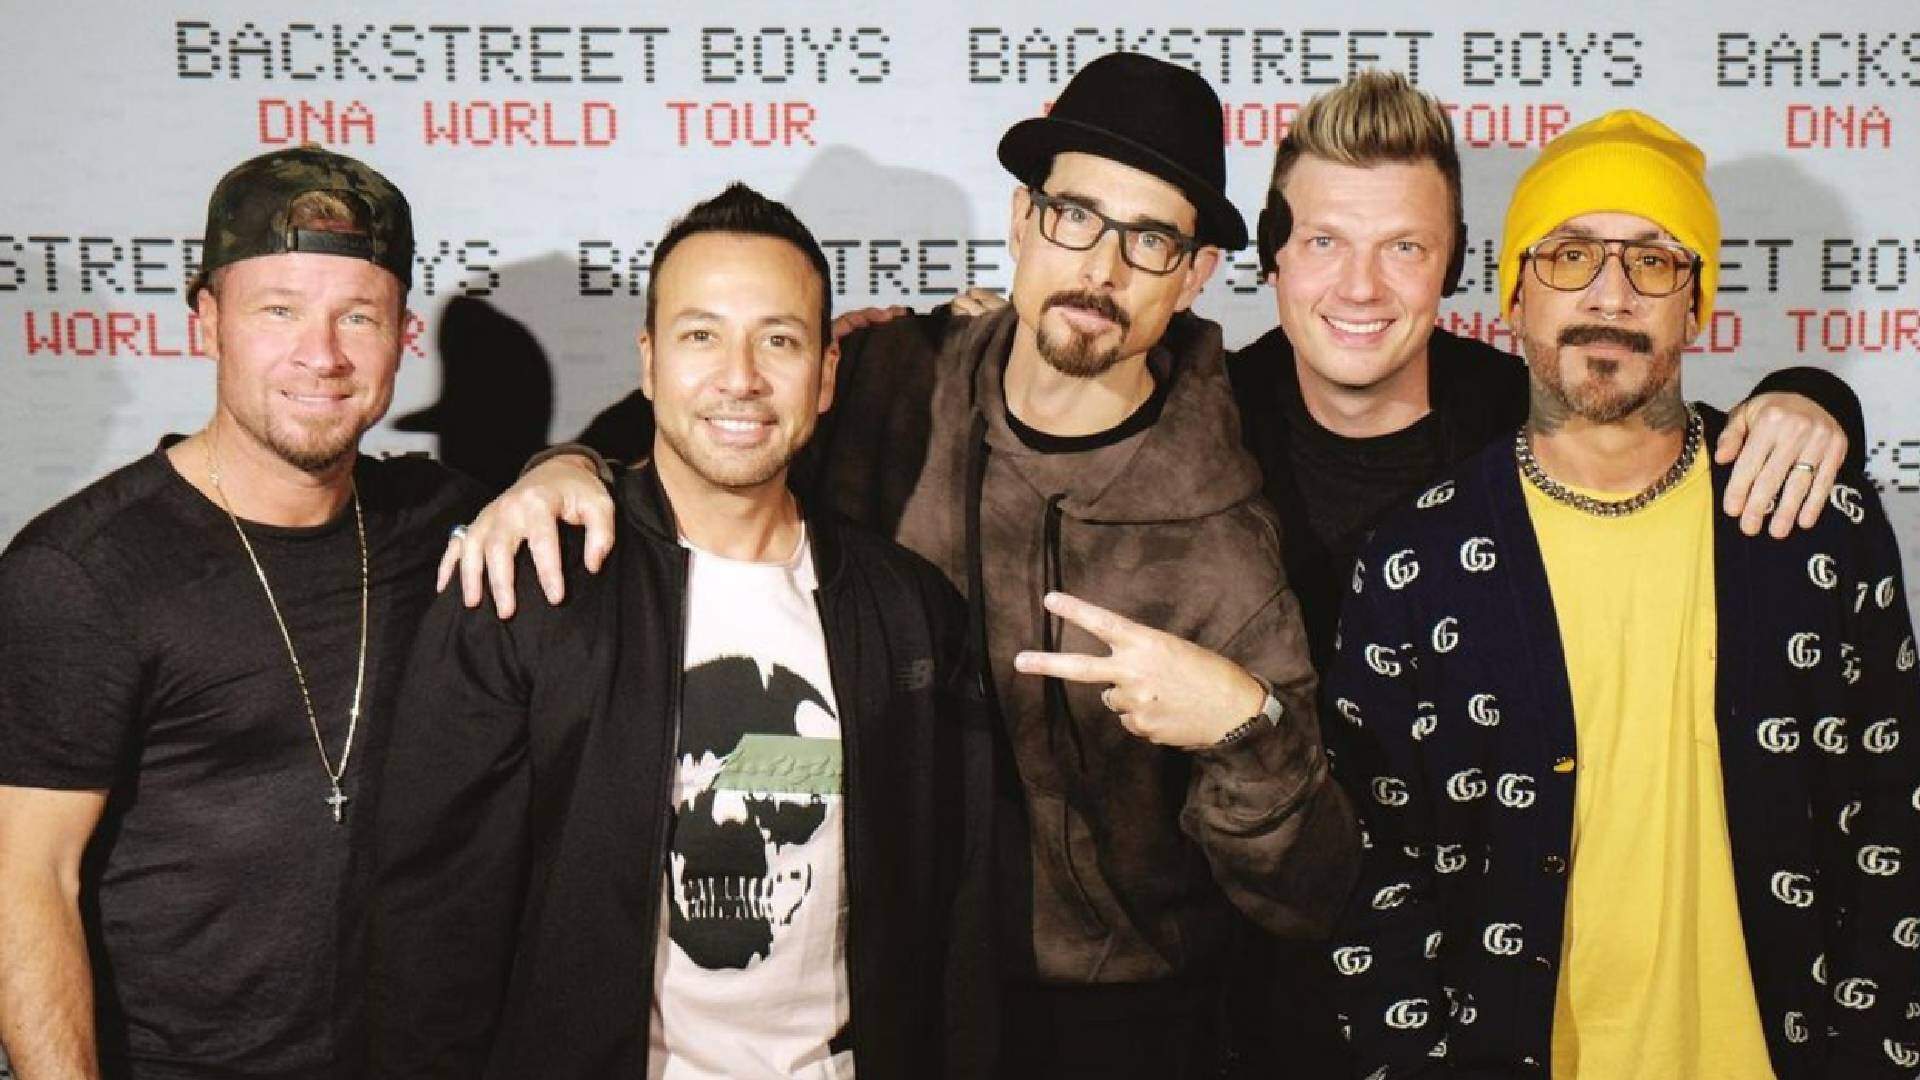 Backstreet Boys cantam com famoso rapper durante show e avisam: “sexto integrante do grupo” - Metropolitana FM